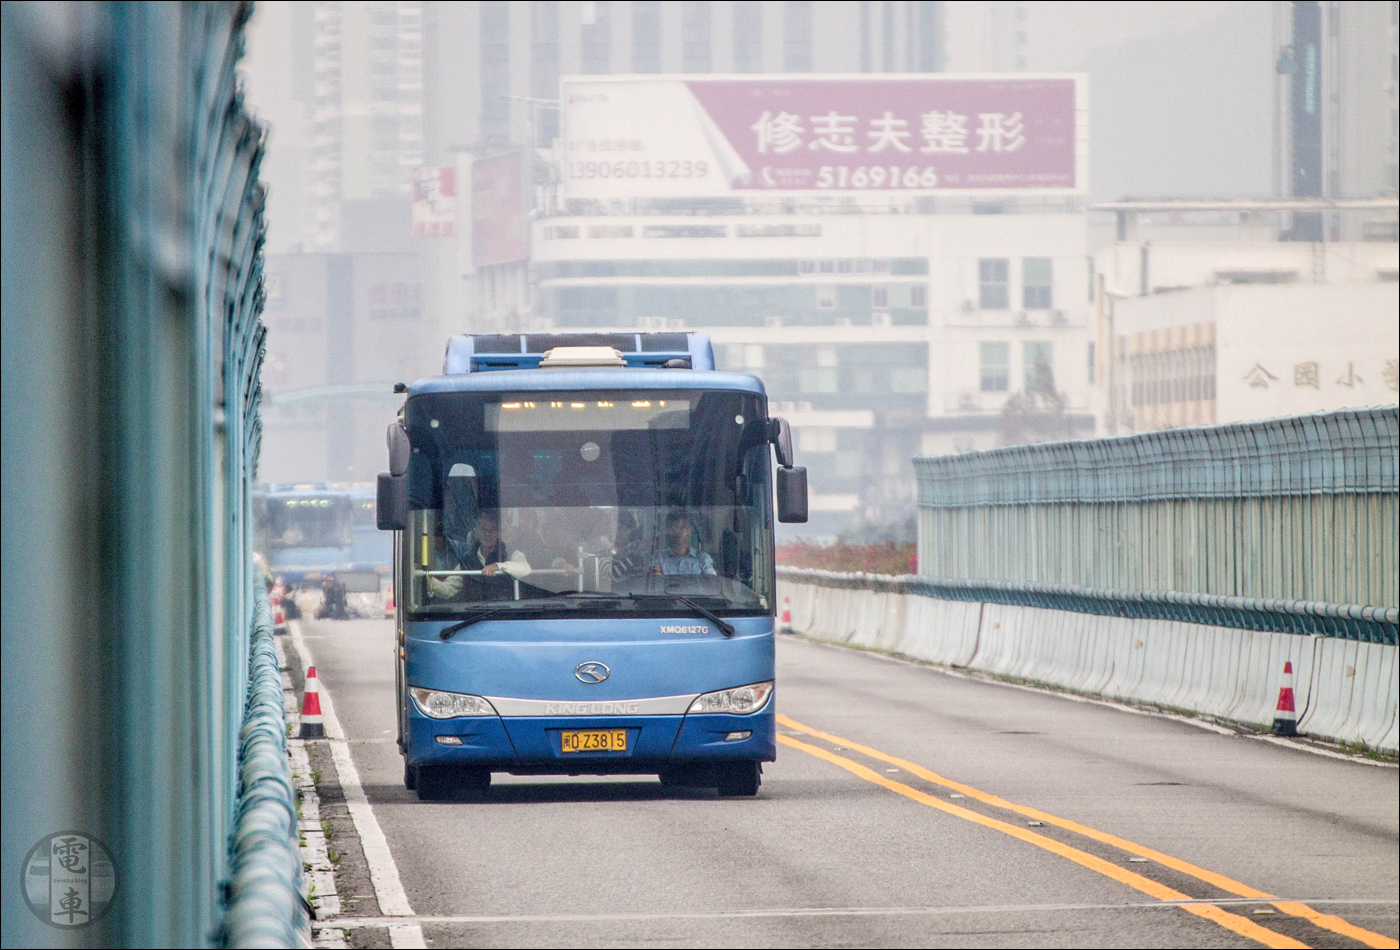 A Xiamenben üzemelő BRT egyik járműve. Jól látható, hogy az úttesten a buszon kívül semmilyen más jármű nem bukkan fel.